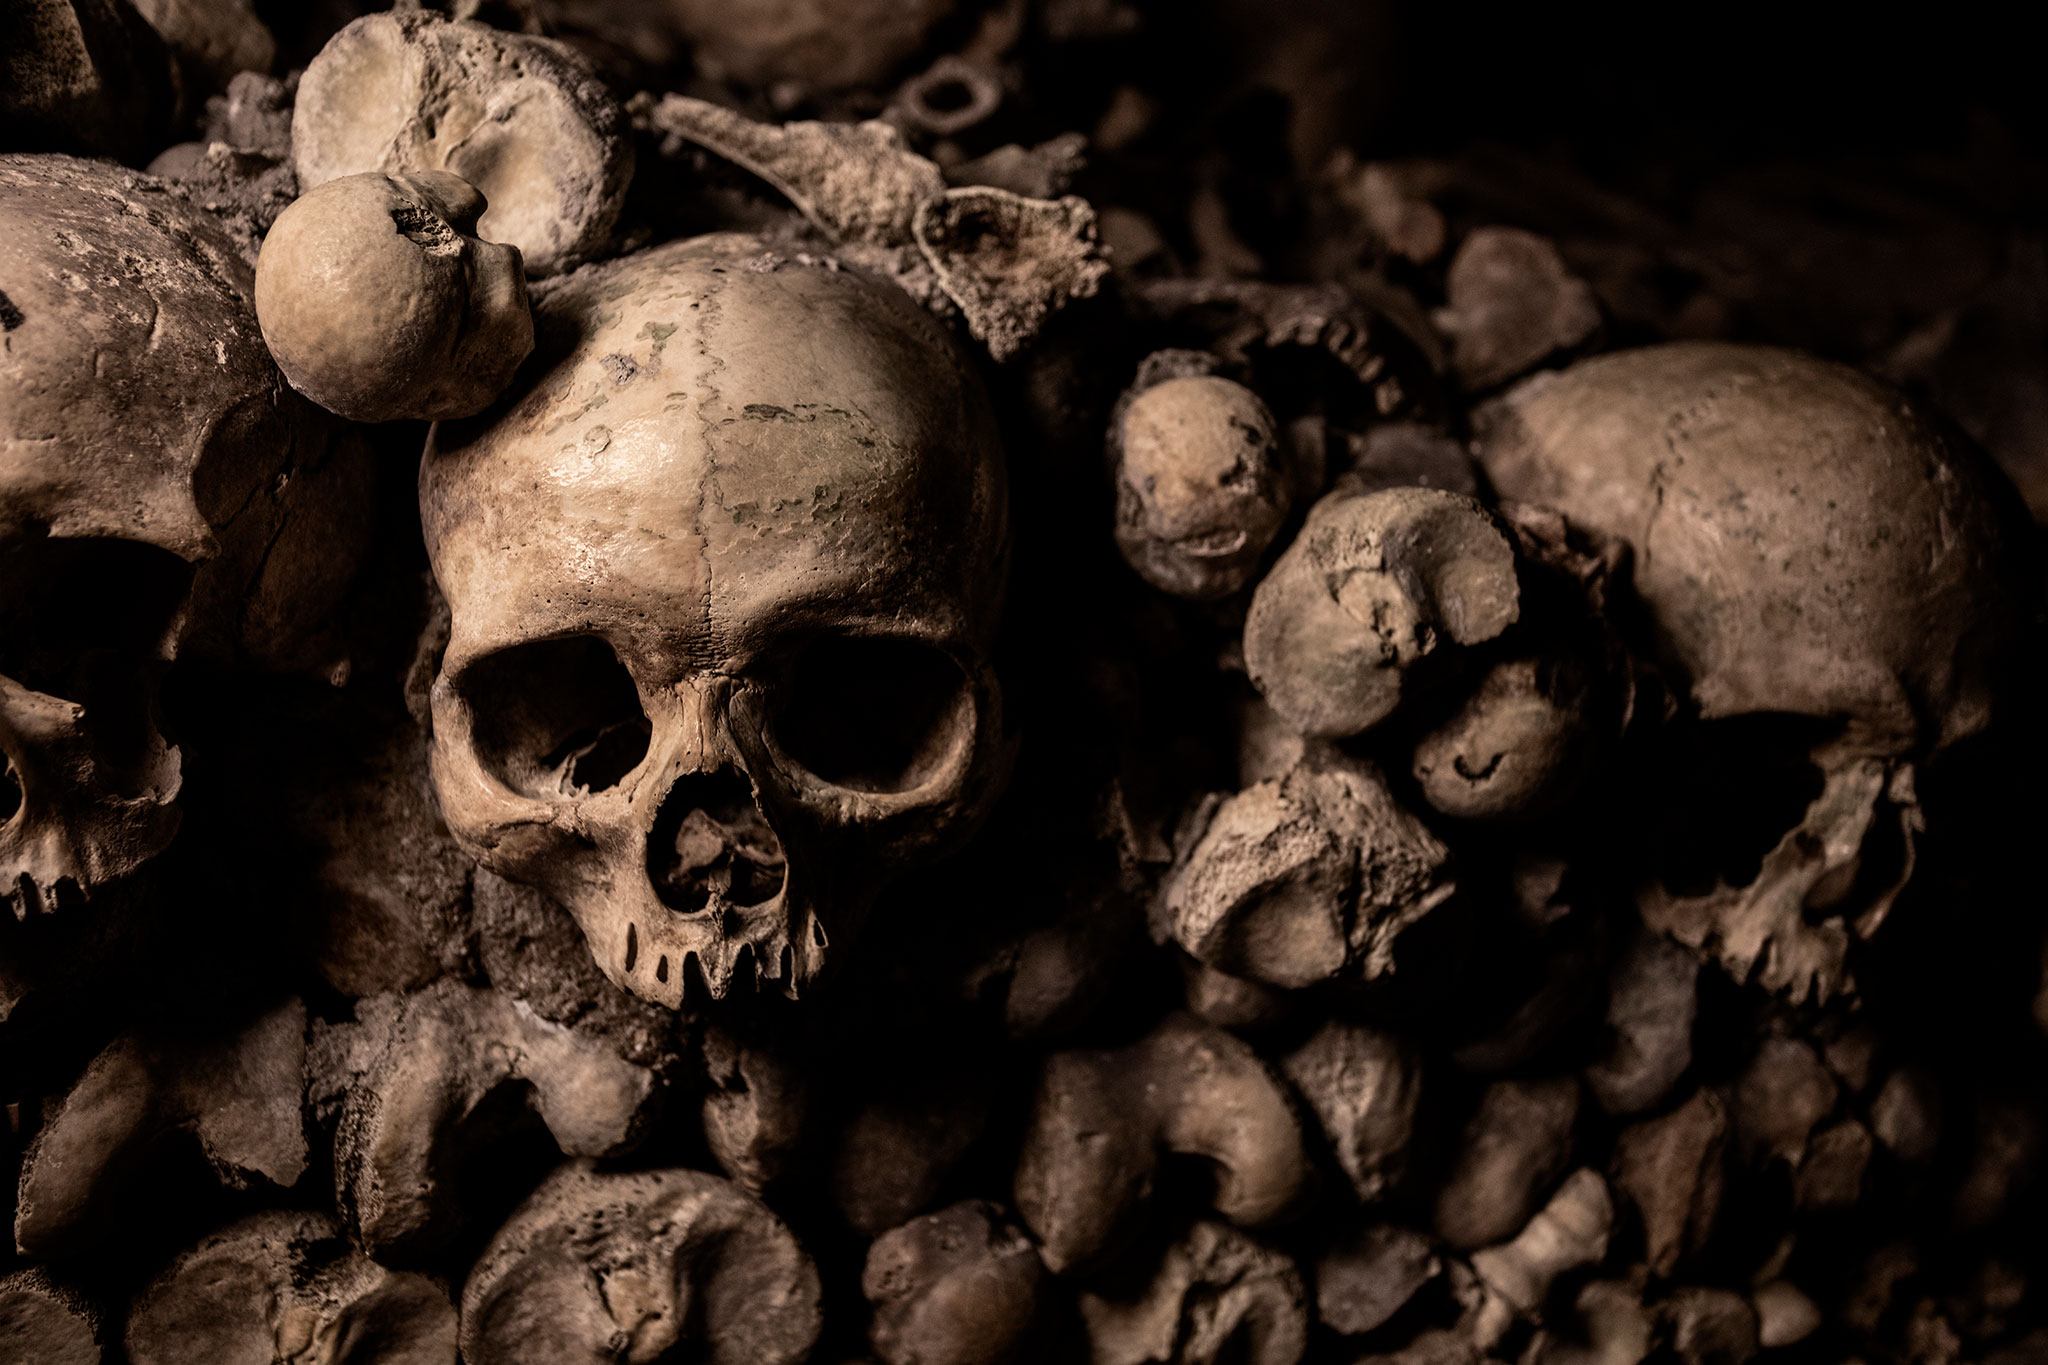 Catacombs of Paris